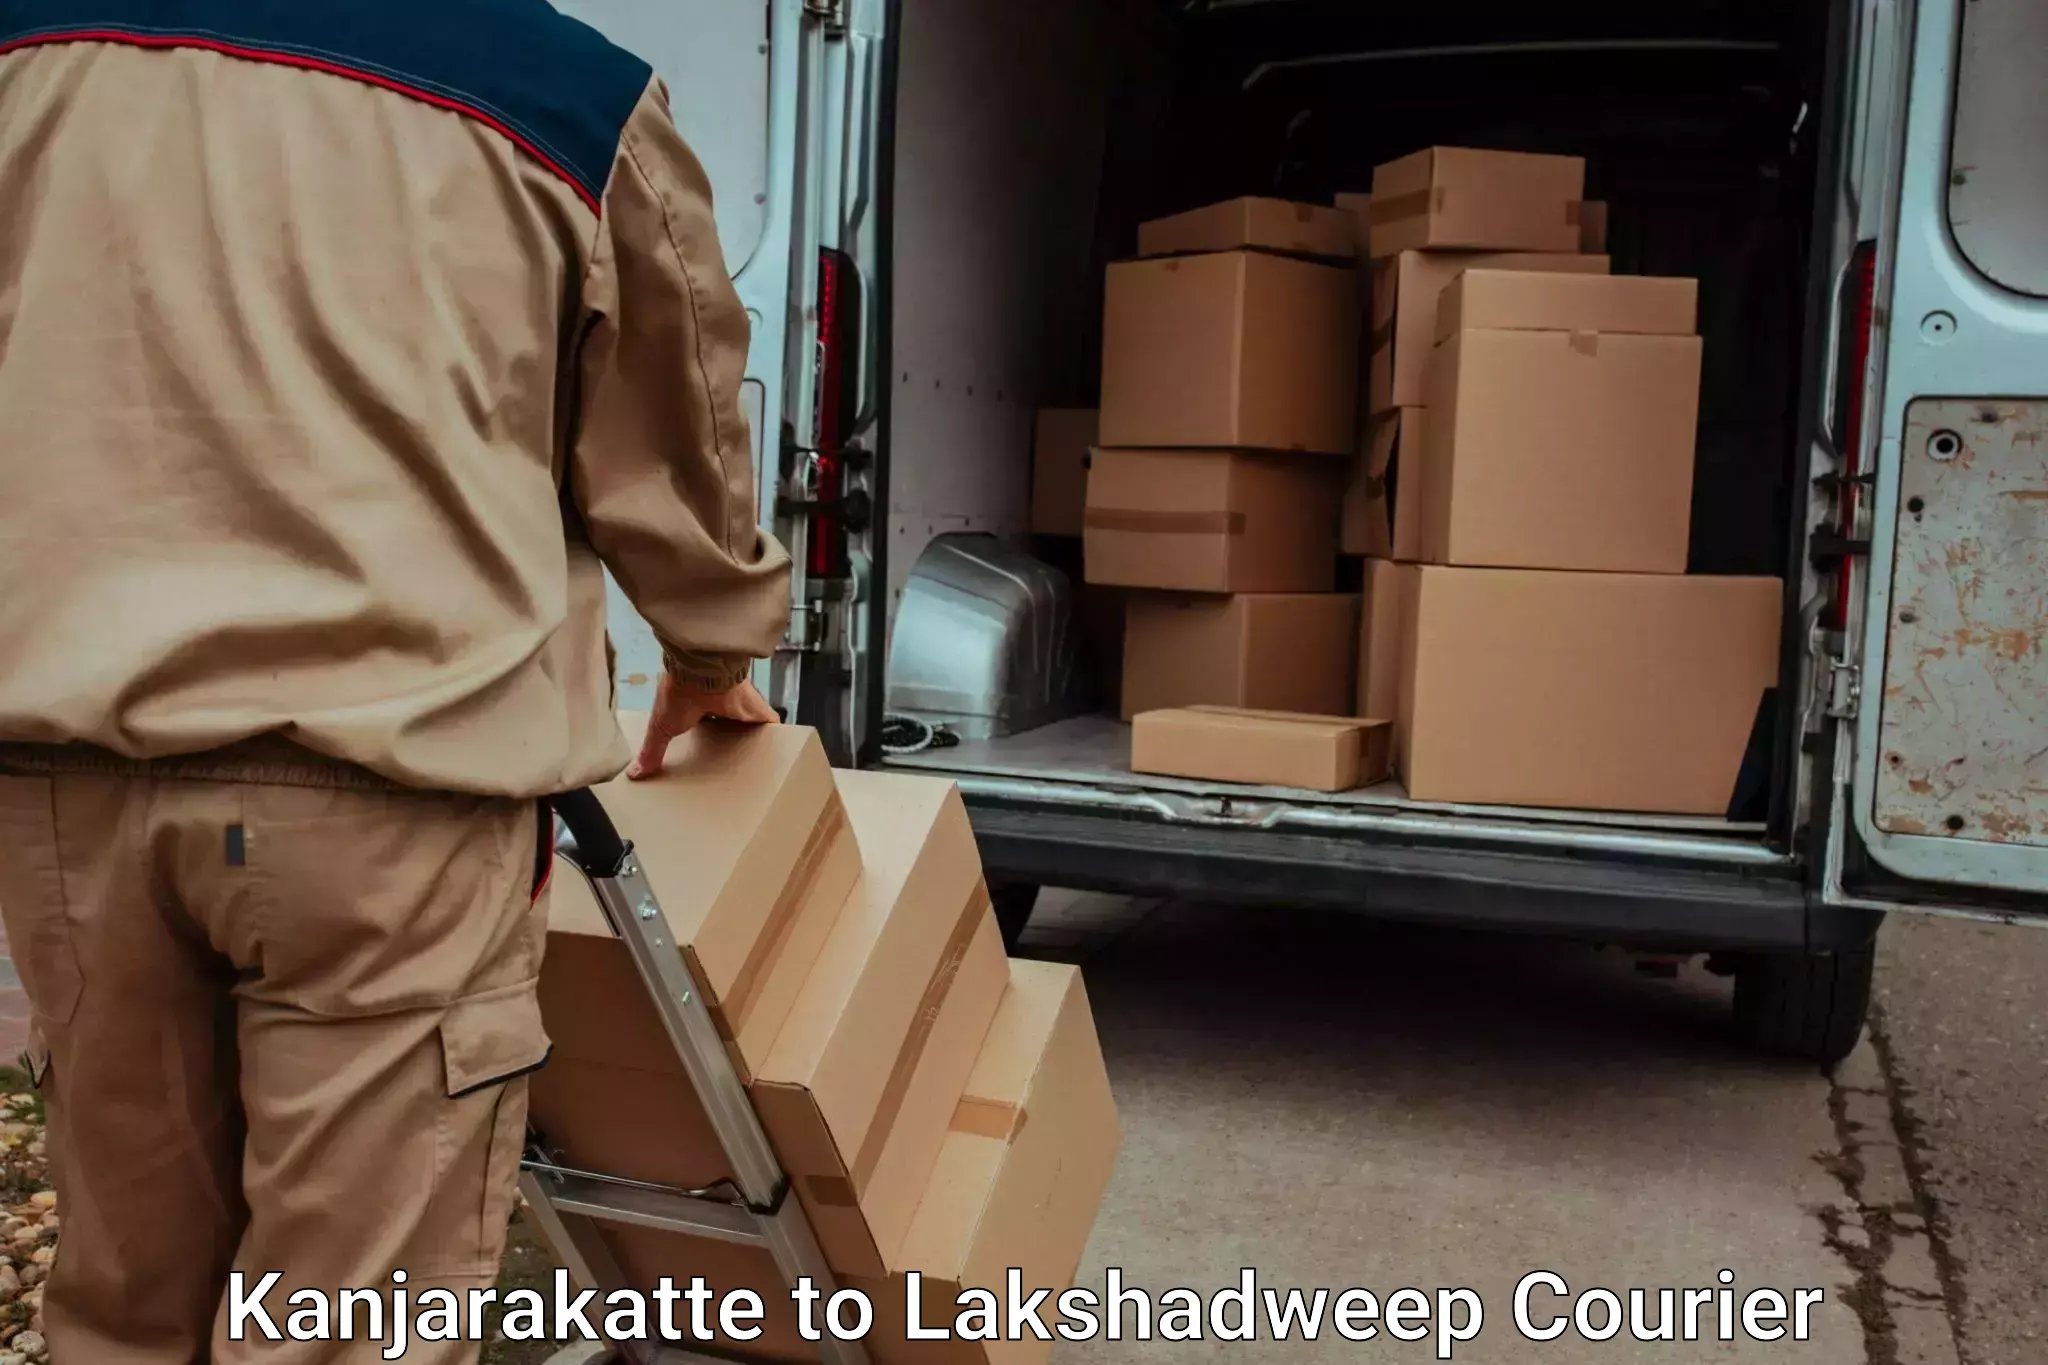 Baggage transport cost Kanjarakatte to Lakshadweep